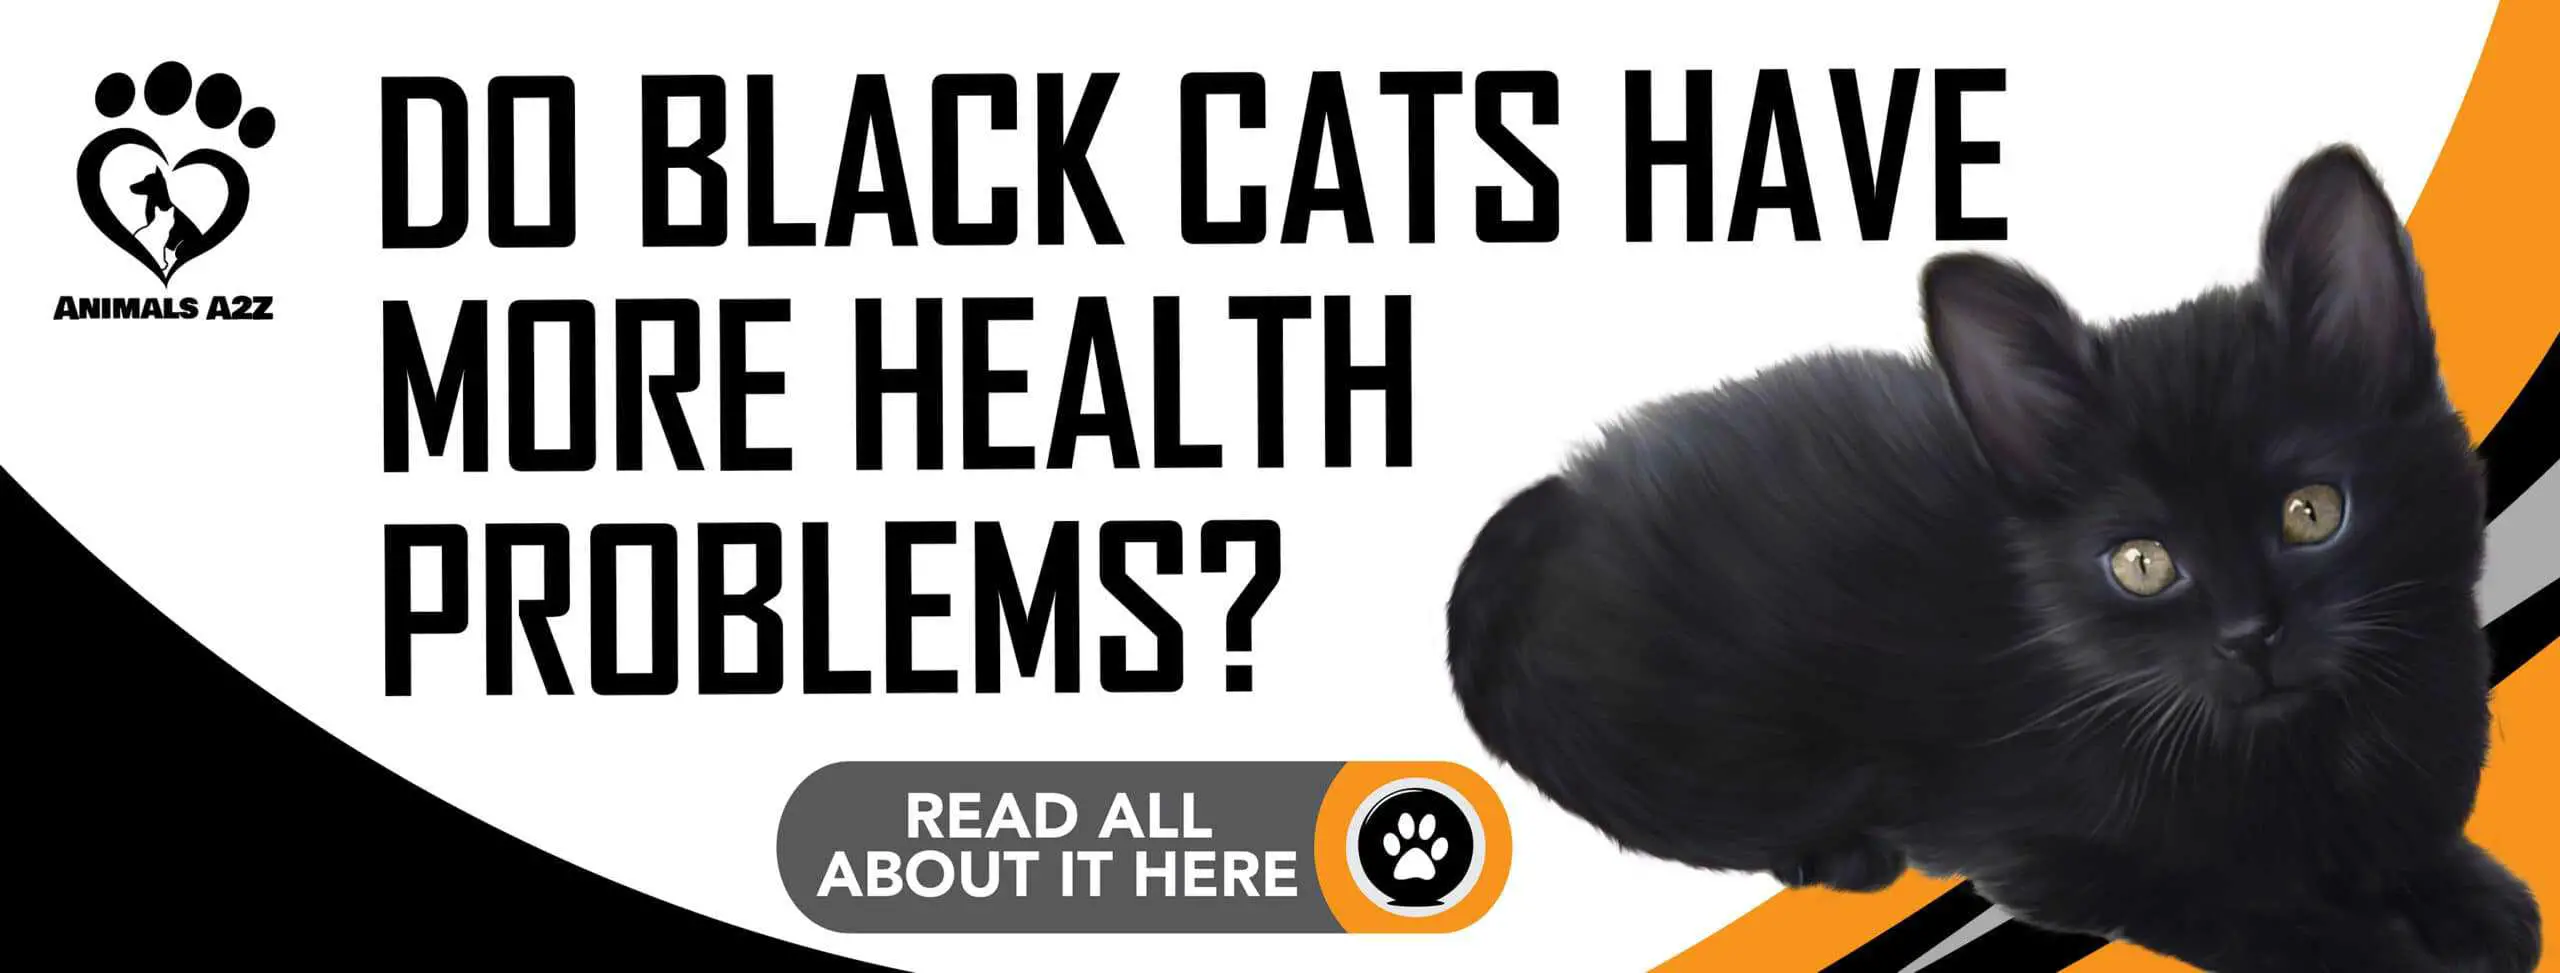 Les chats noirs ont-ils plus de problèmes de santé ?